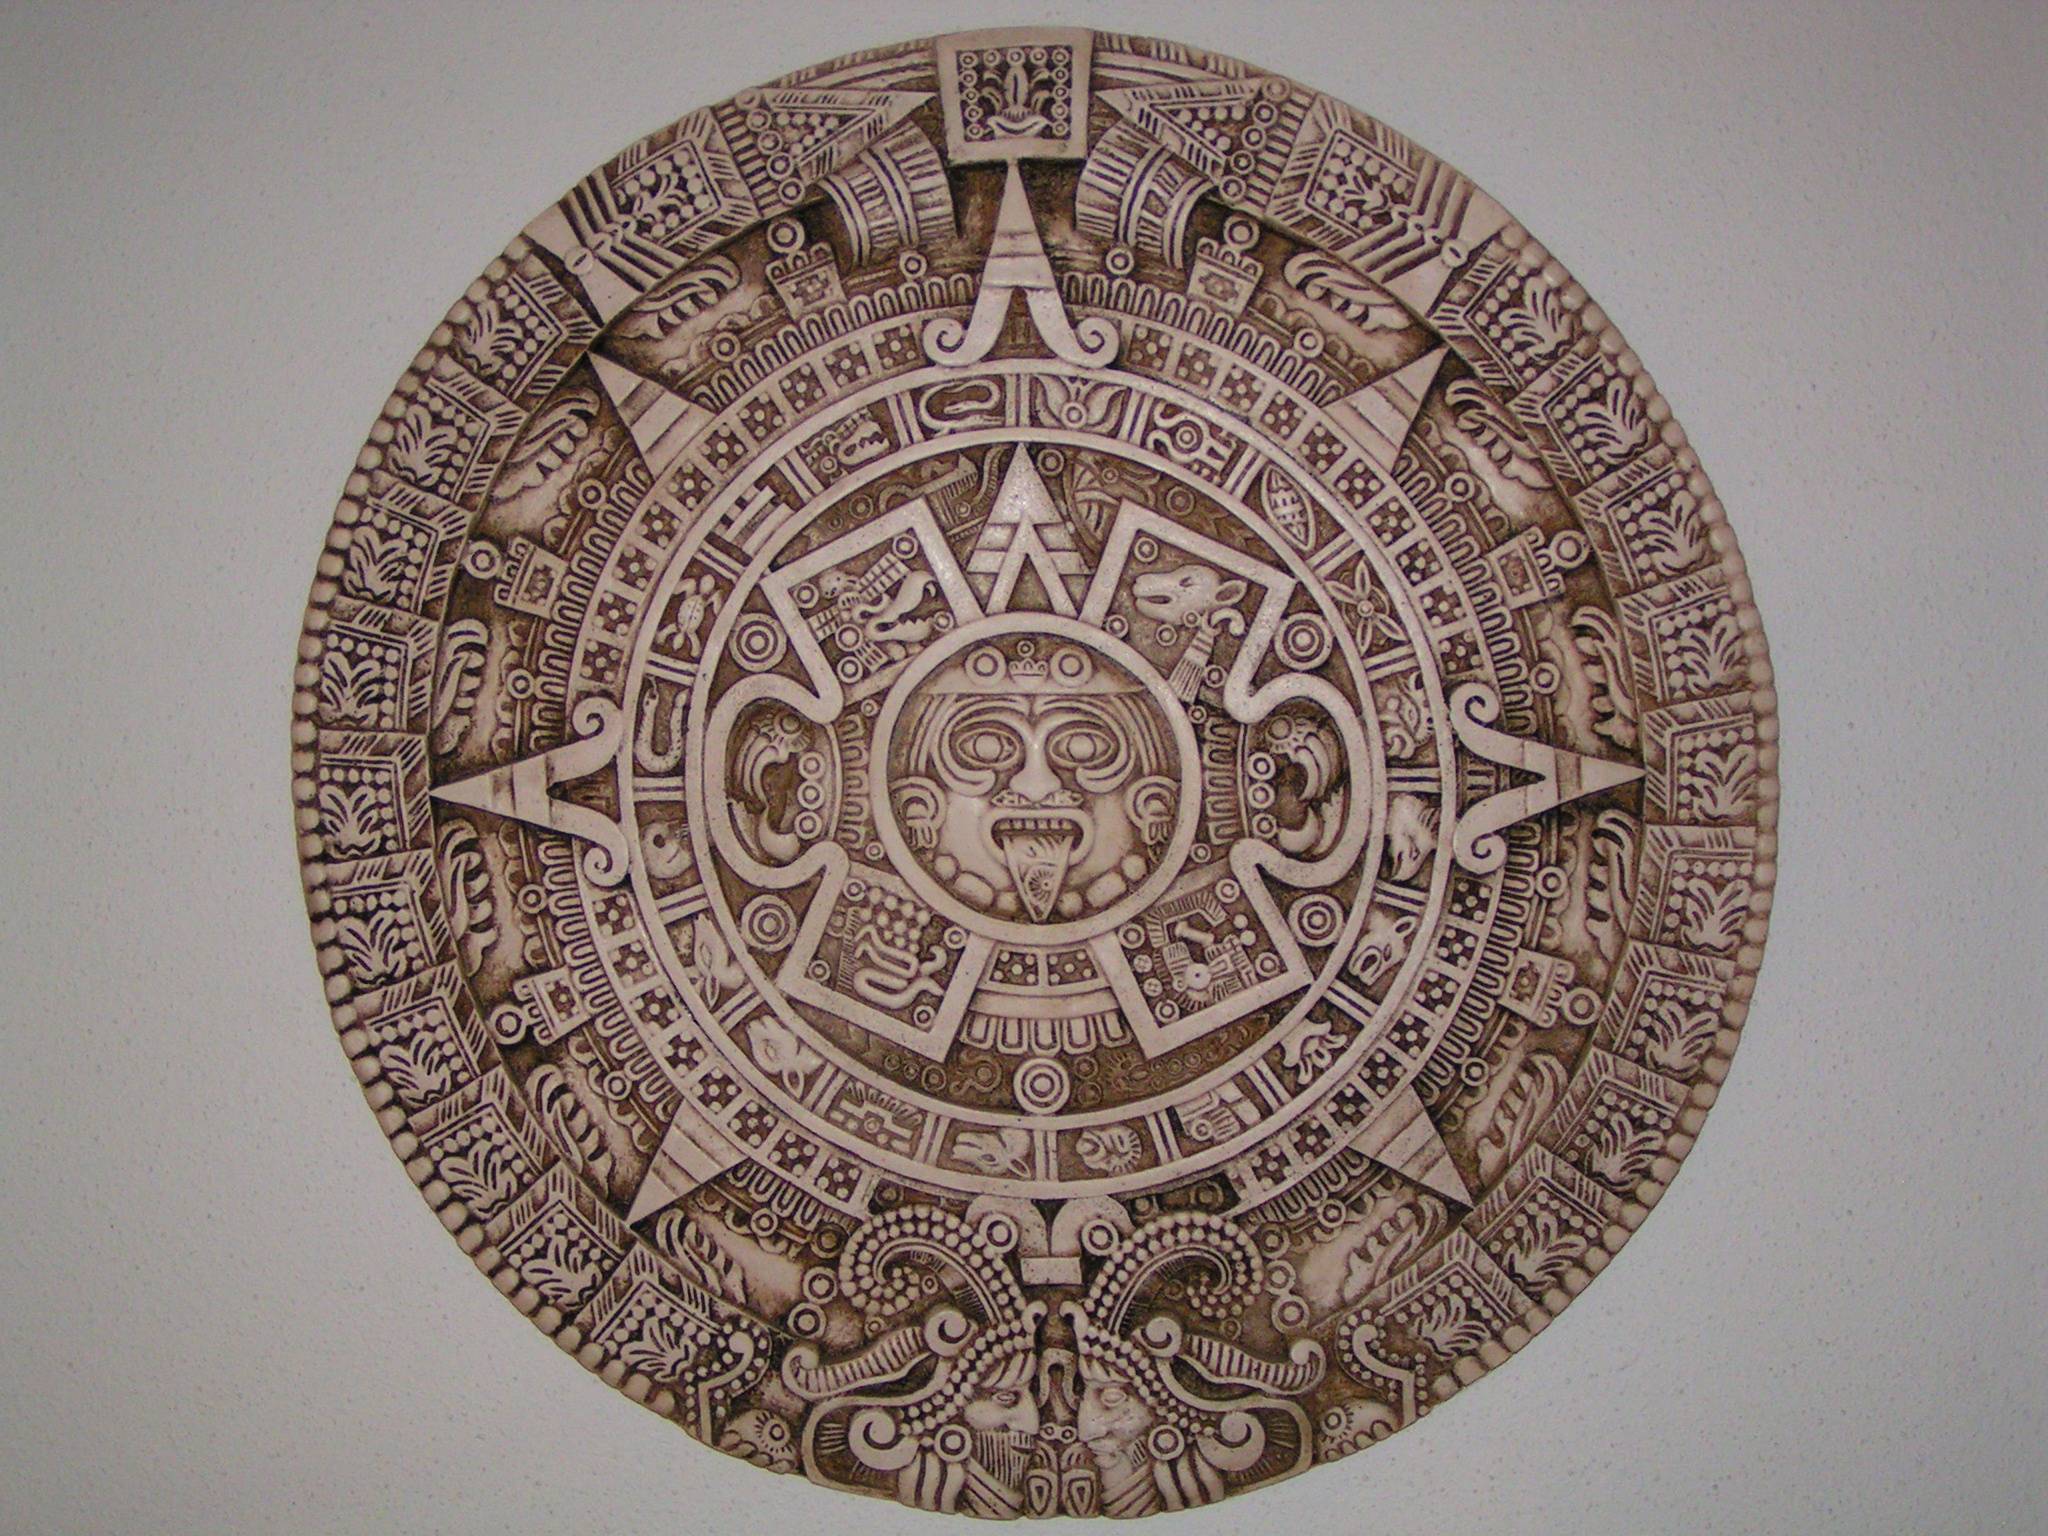 Mayan Calendar Wallpaper